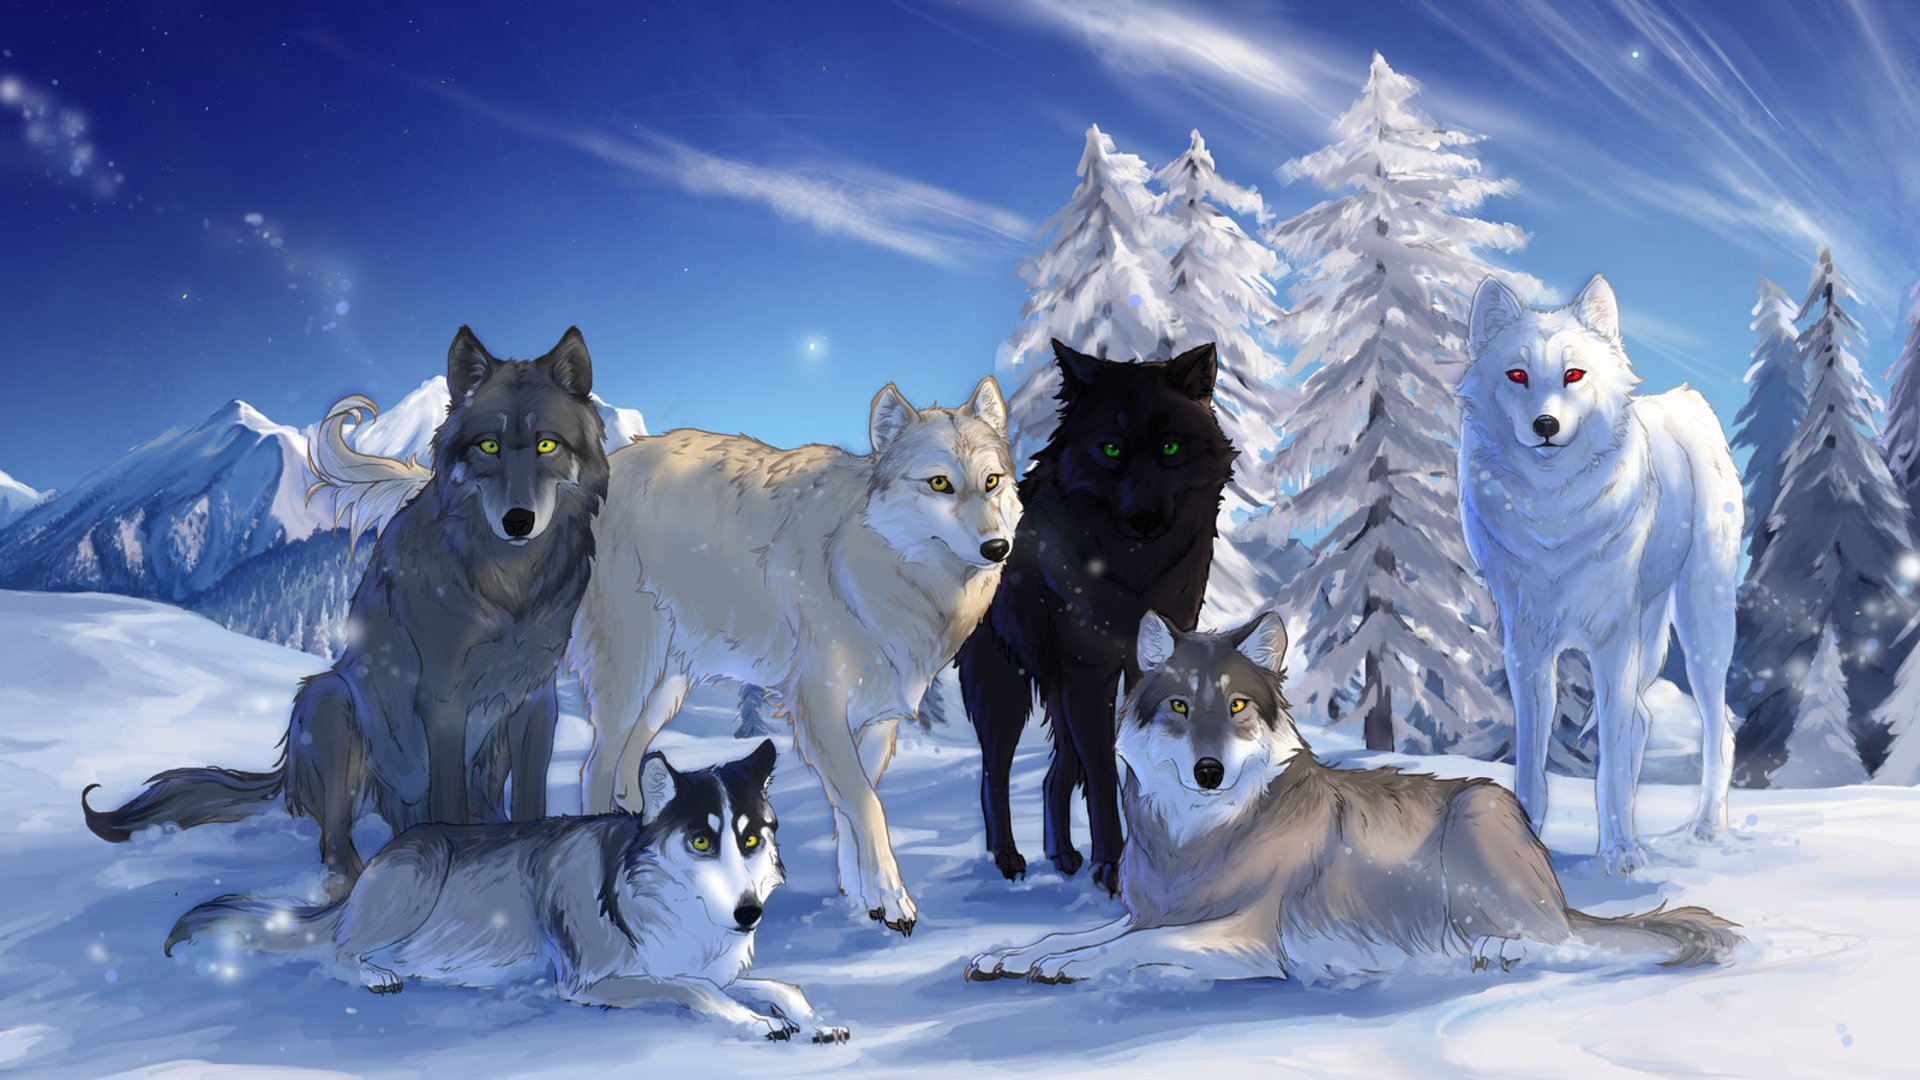 Волки сидят в снежном лесу Обои на рабочий стол.